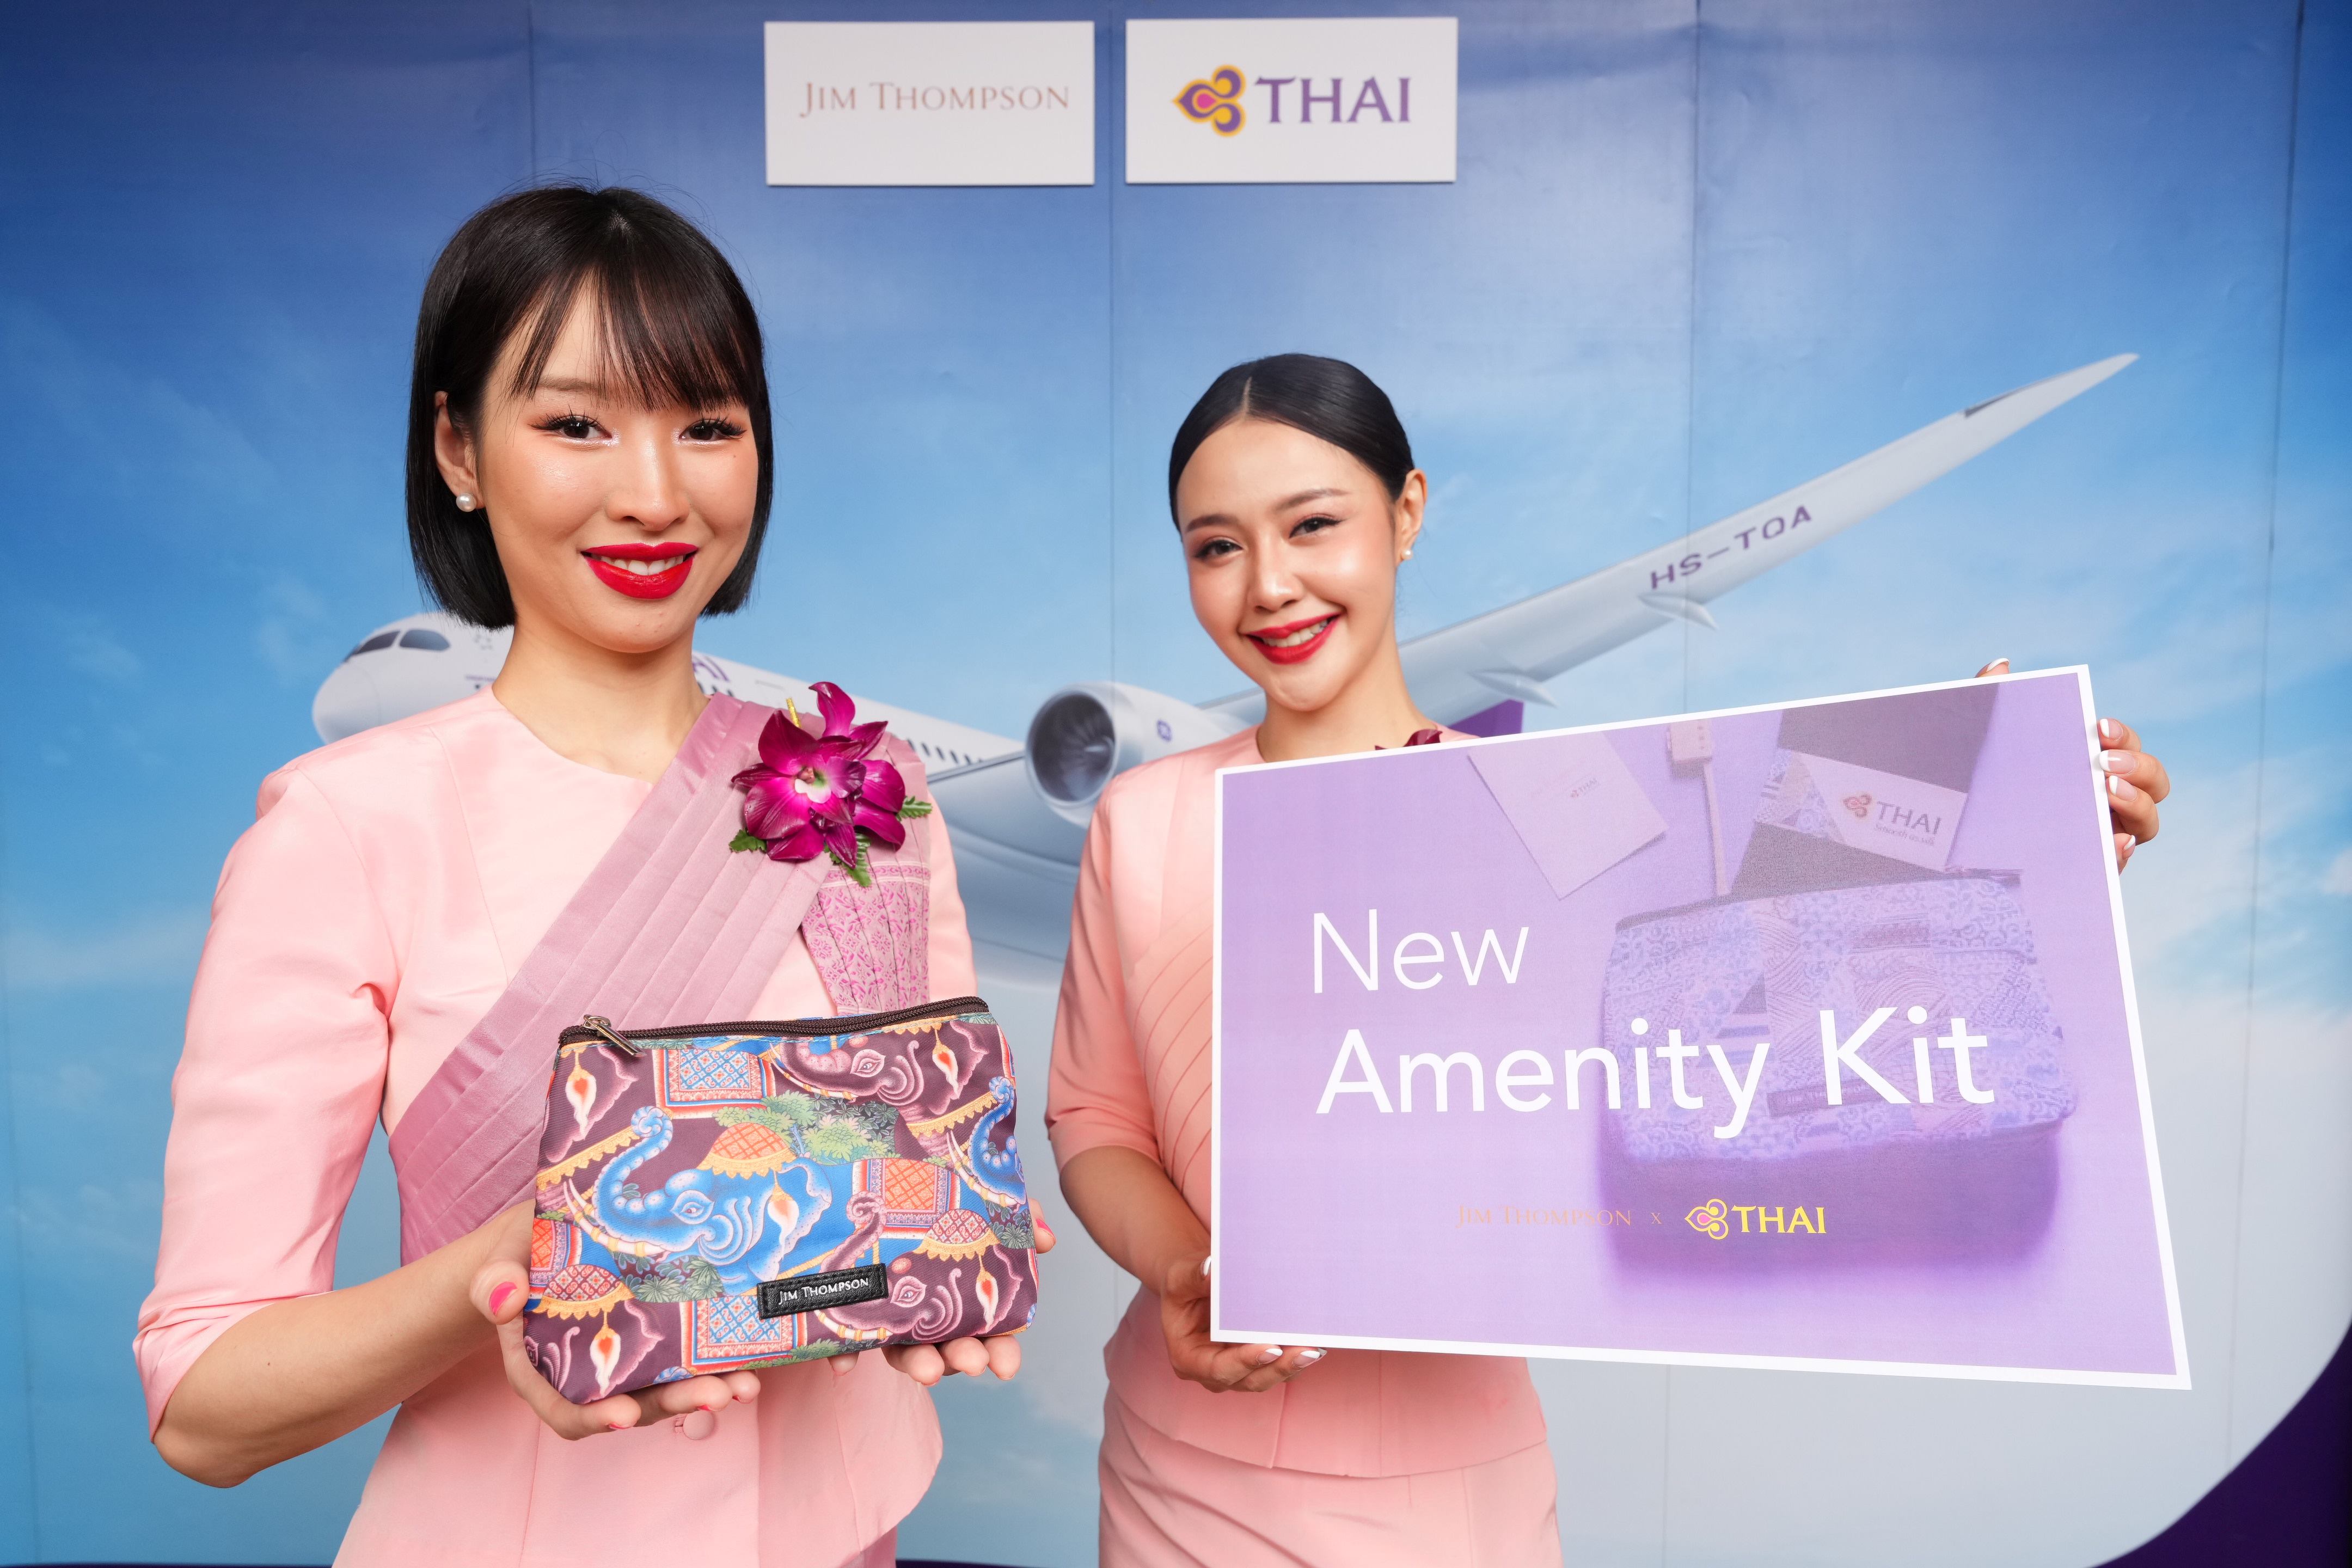 การบินไทย และจิม ทอมป์สัน จับมือเปิดตัว Amenity Kit แบบใหม่ บริการผู้โดยสารบนเครื่องบินของการบินไทยในคอนเซปต์รักษ์โลก